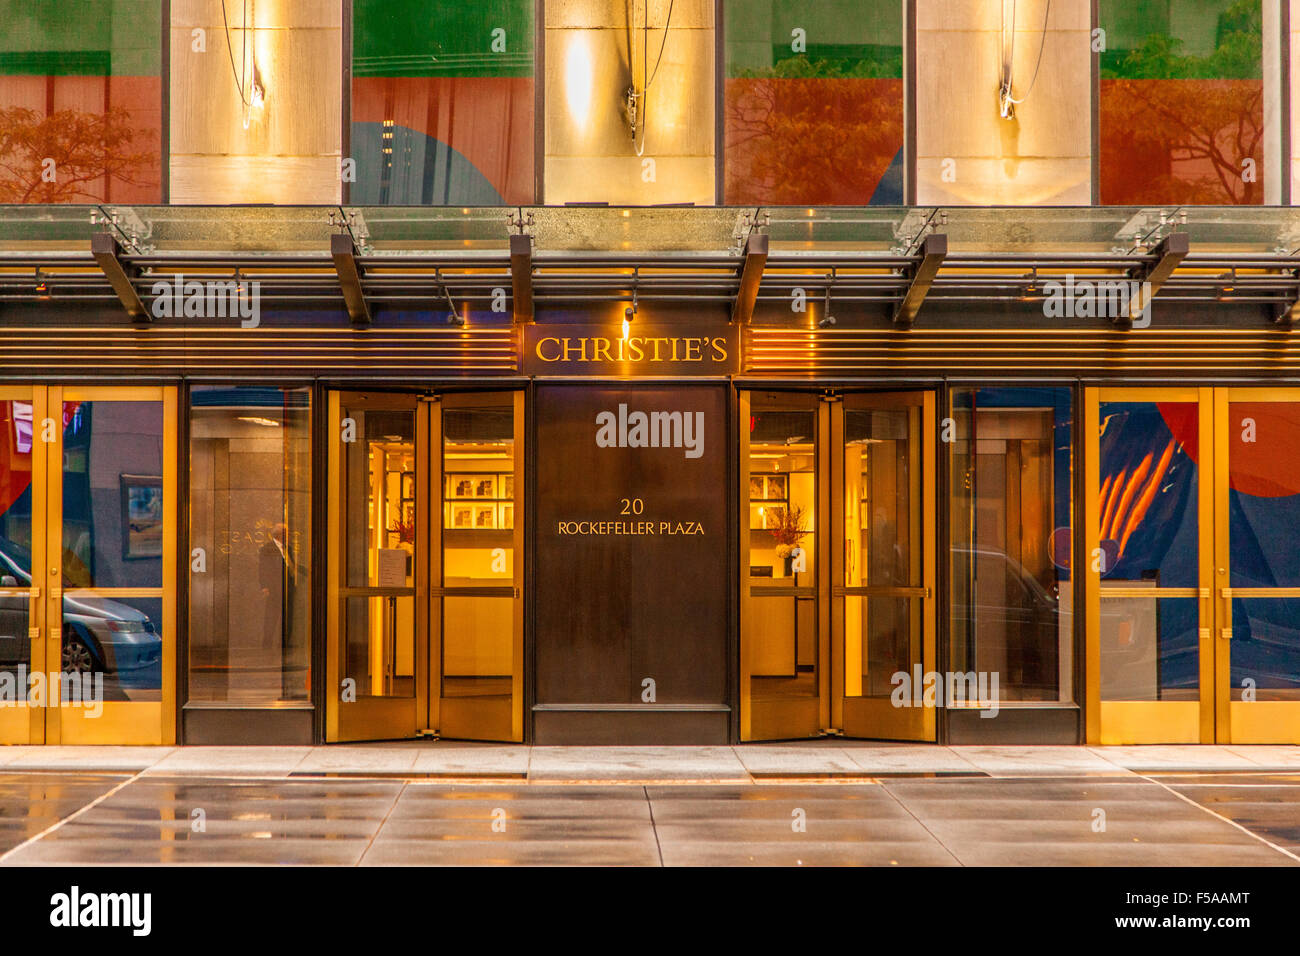 Maison de ventes aux enchères Christie's, Rockefeller Plaza, New York City, États-Unis d'Amérique. Banque D'Images